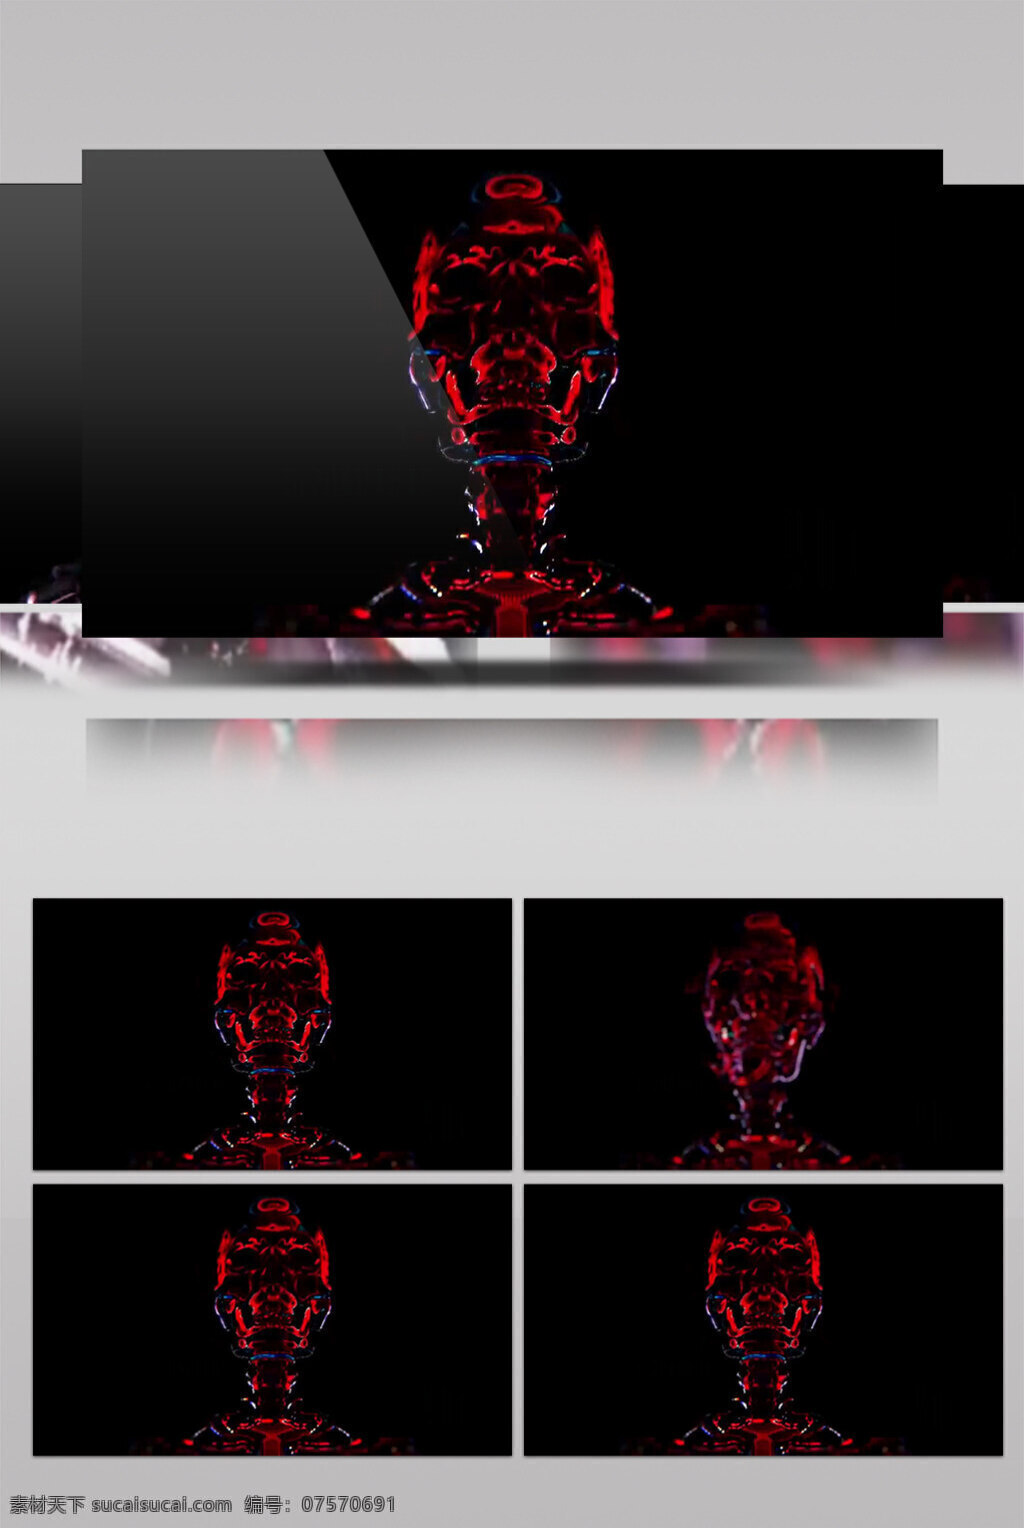 暗红 雕塑 动态 视频 暗红雕塑 人体雕塑 生活实用 节目使用 实用背景素材